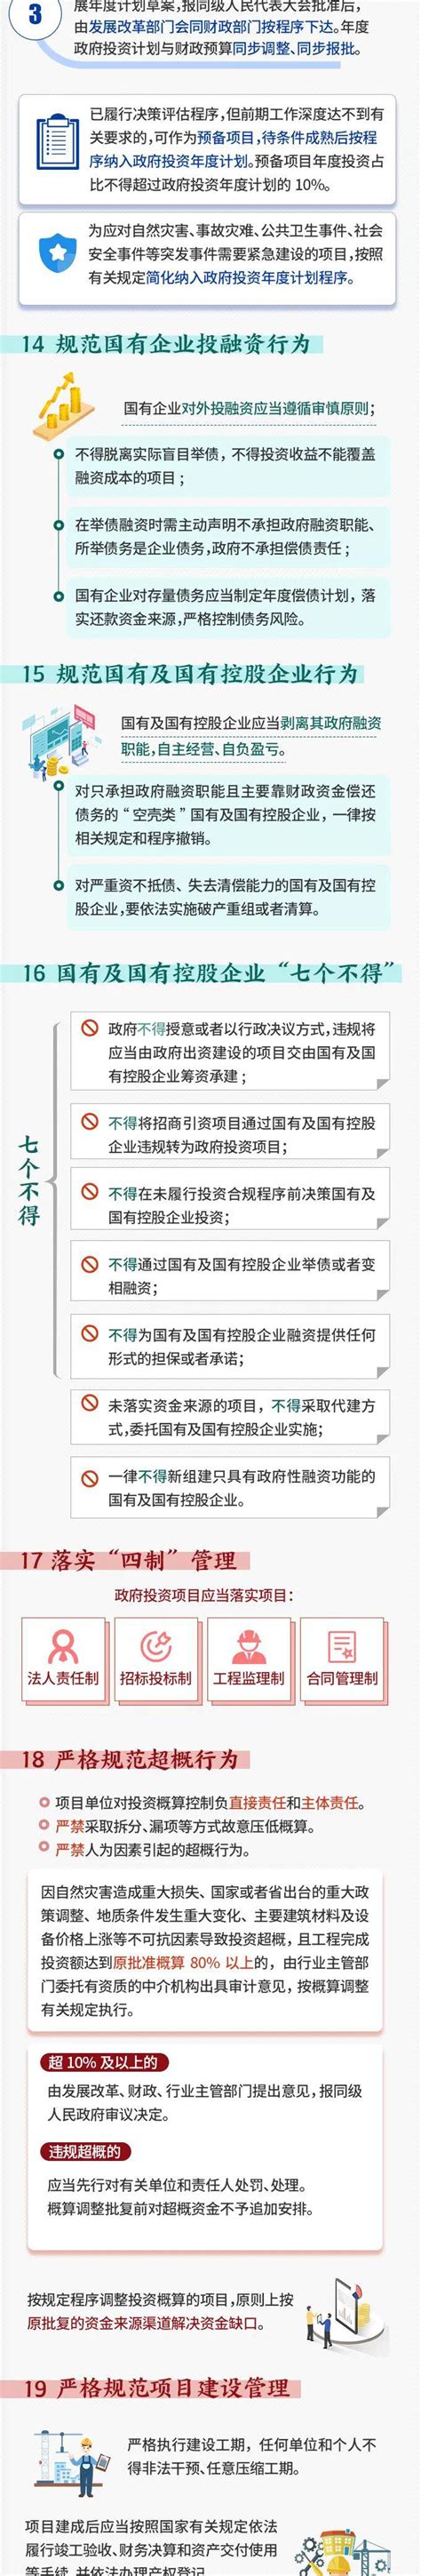 一图读懂《贵州省政府投资项目管理办法》